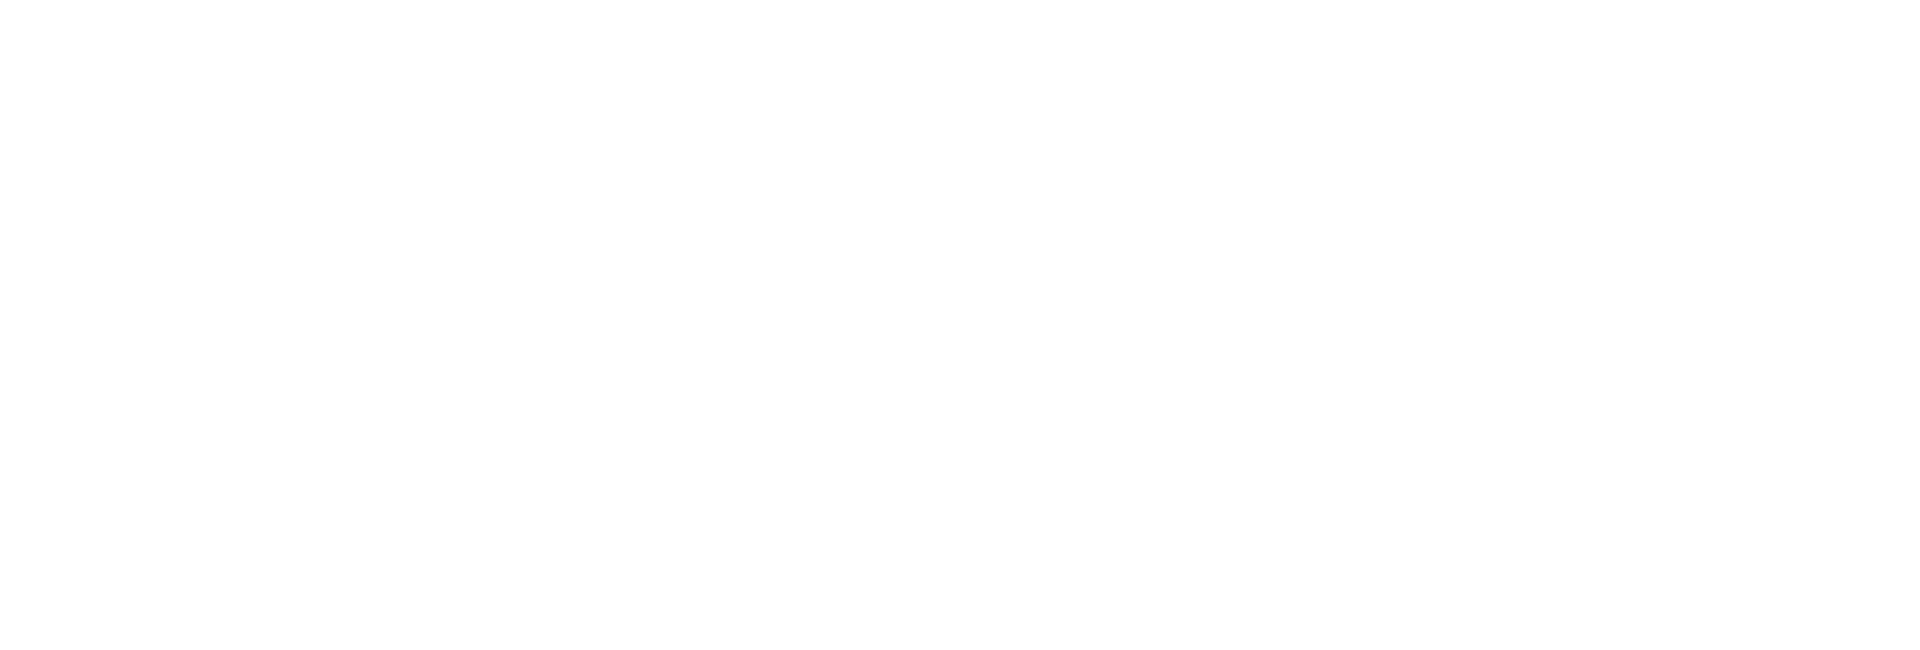 pizzarecipe.org